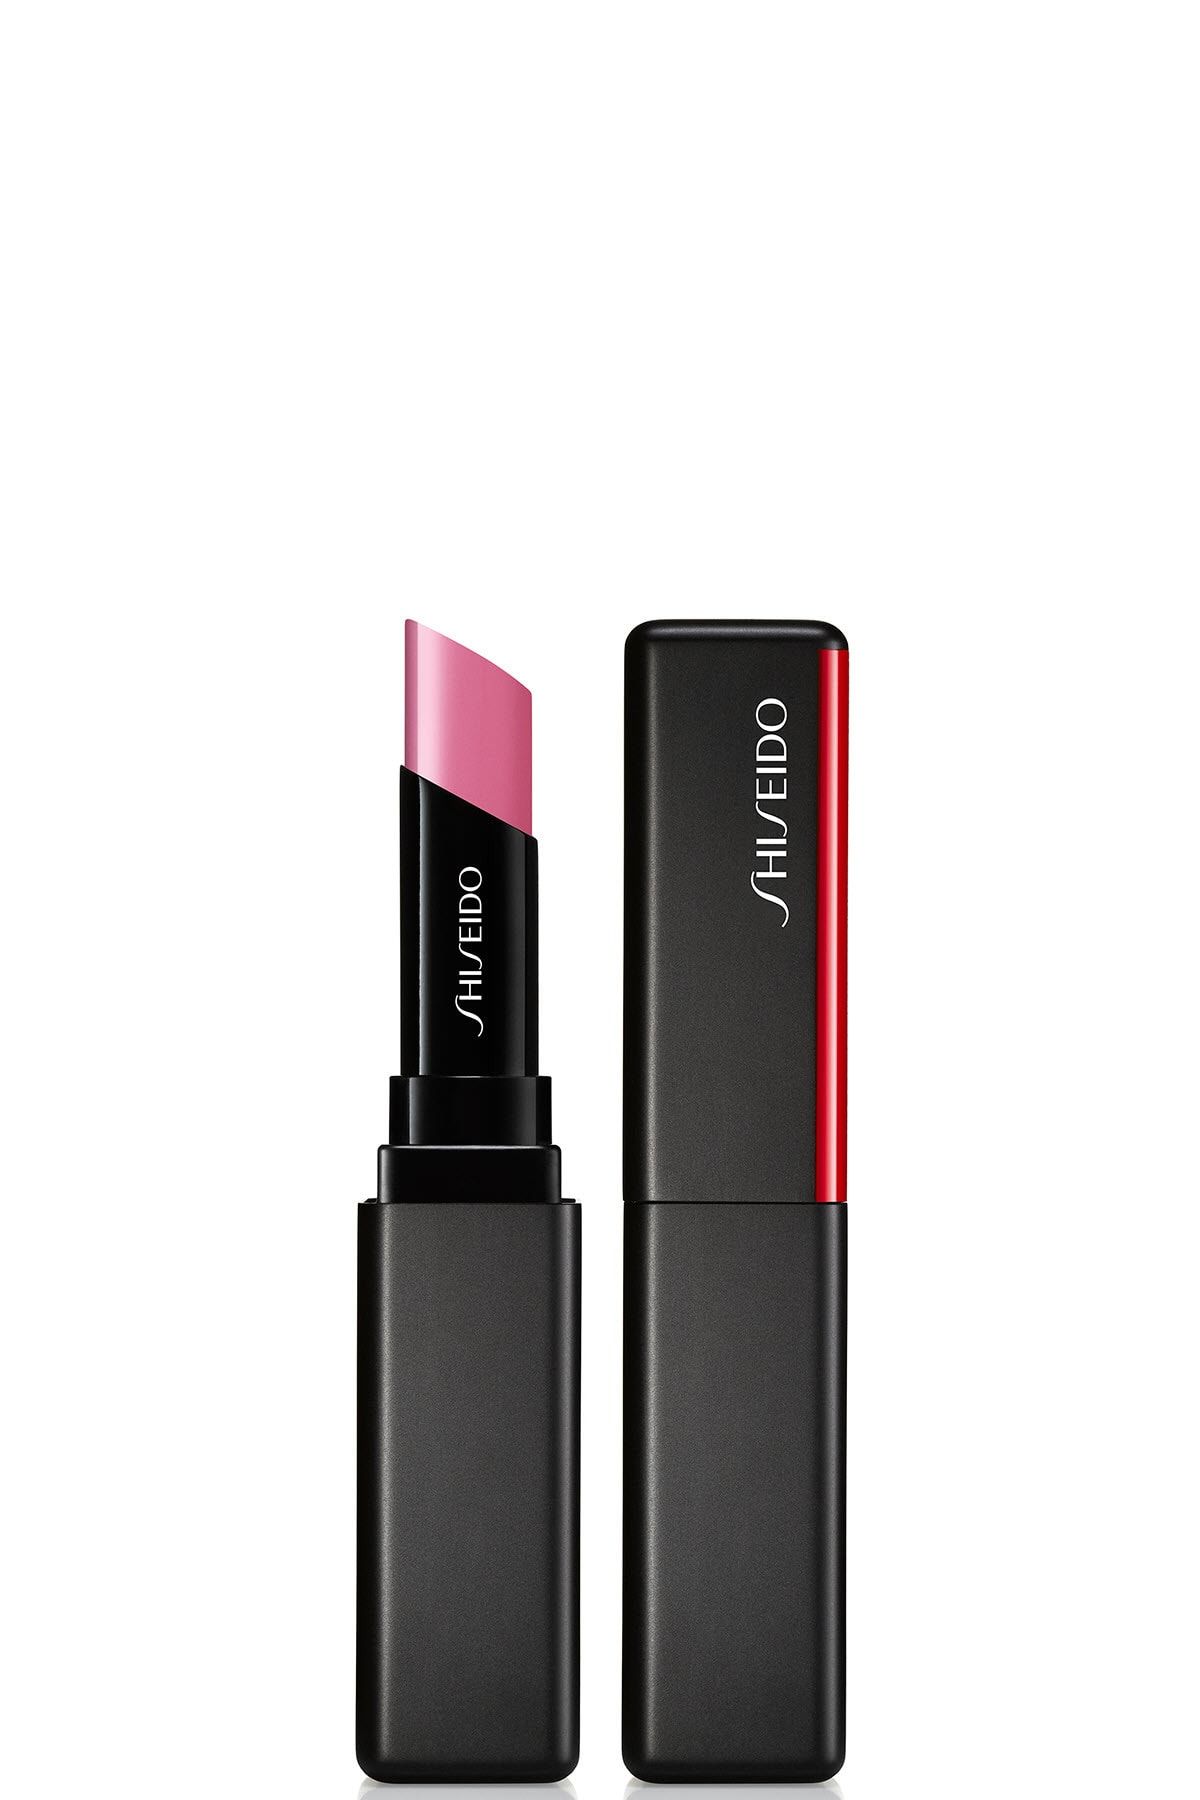 Shiseido Kalıcı Nemlendirici Ruj - SMK Visionairy Gel Lipstick 205 729238148055